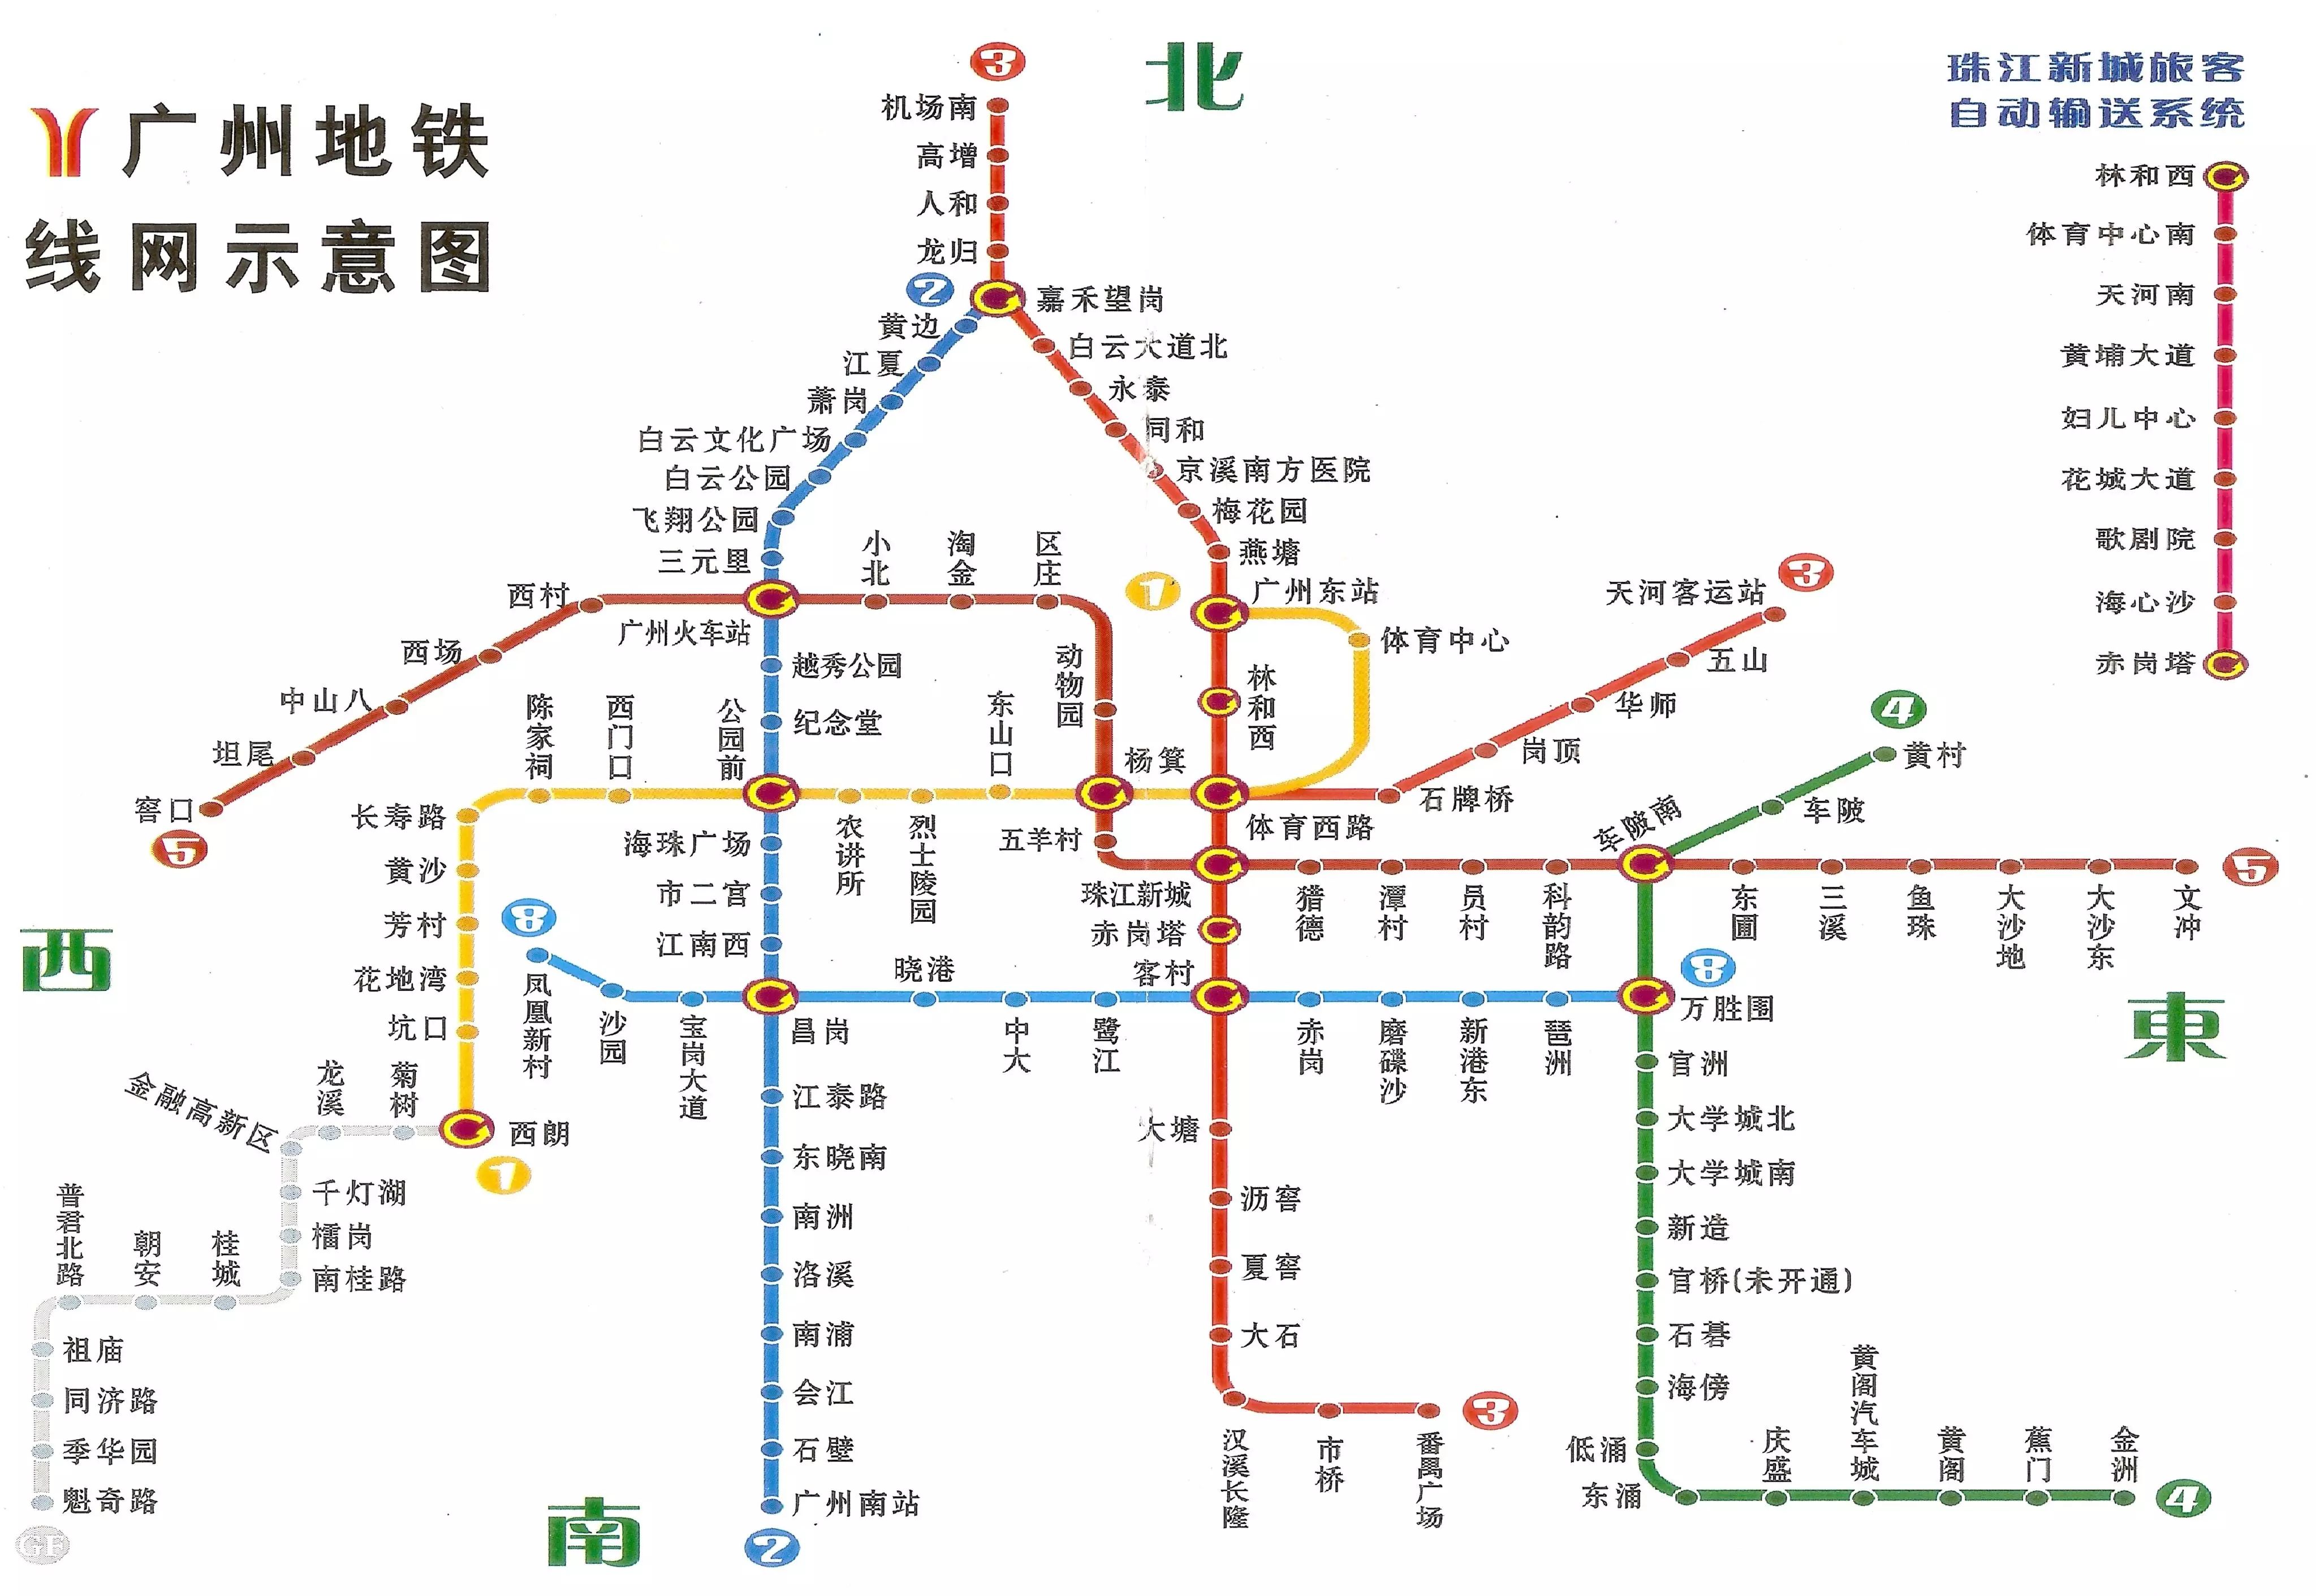 好消息 | 2017年广州有望开通4条地铁新线 这些地铁盘